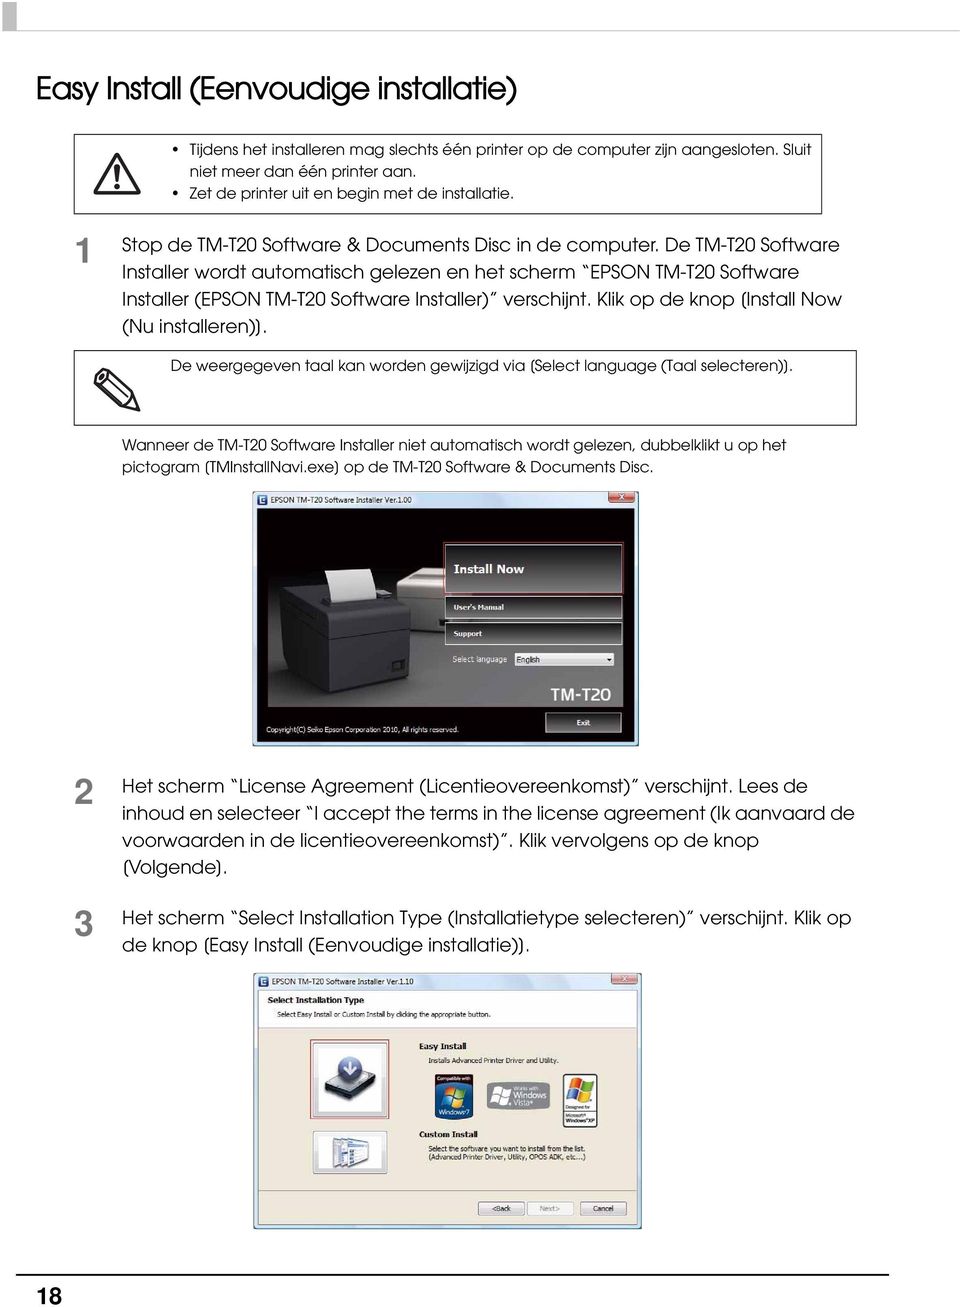 De TM-T0 Software Installer wordt automatisch gelezen en het scherm EPSON TM-T0 Software Installer (EPSON TM-T0 Software Installer) verschijnt. Klik op de knop [Install Now (Nu installeren)].